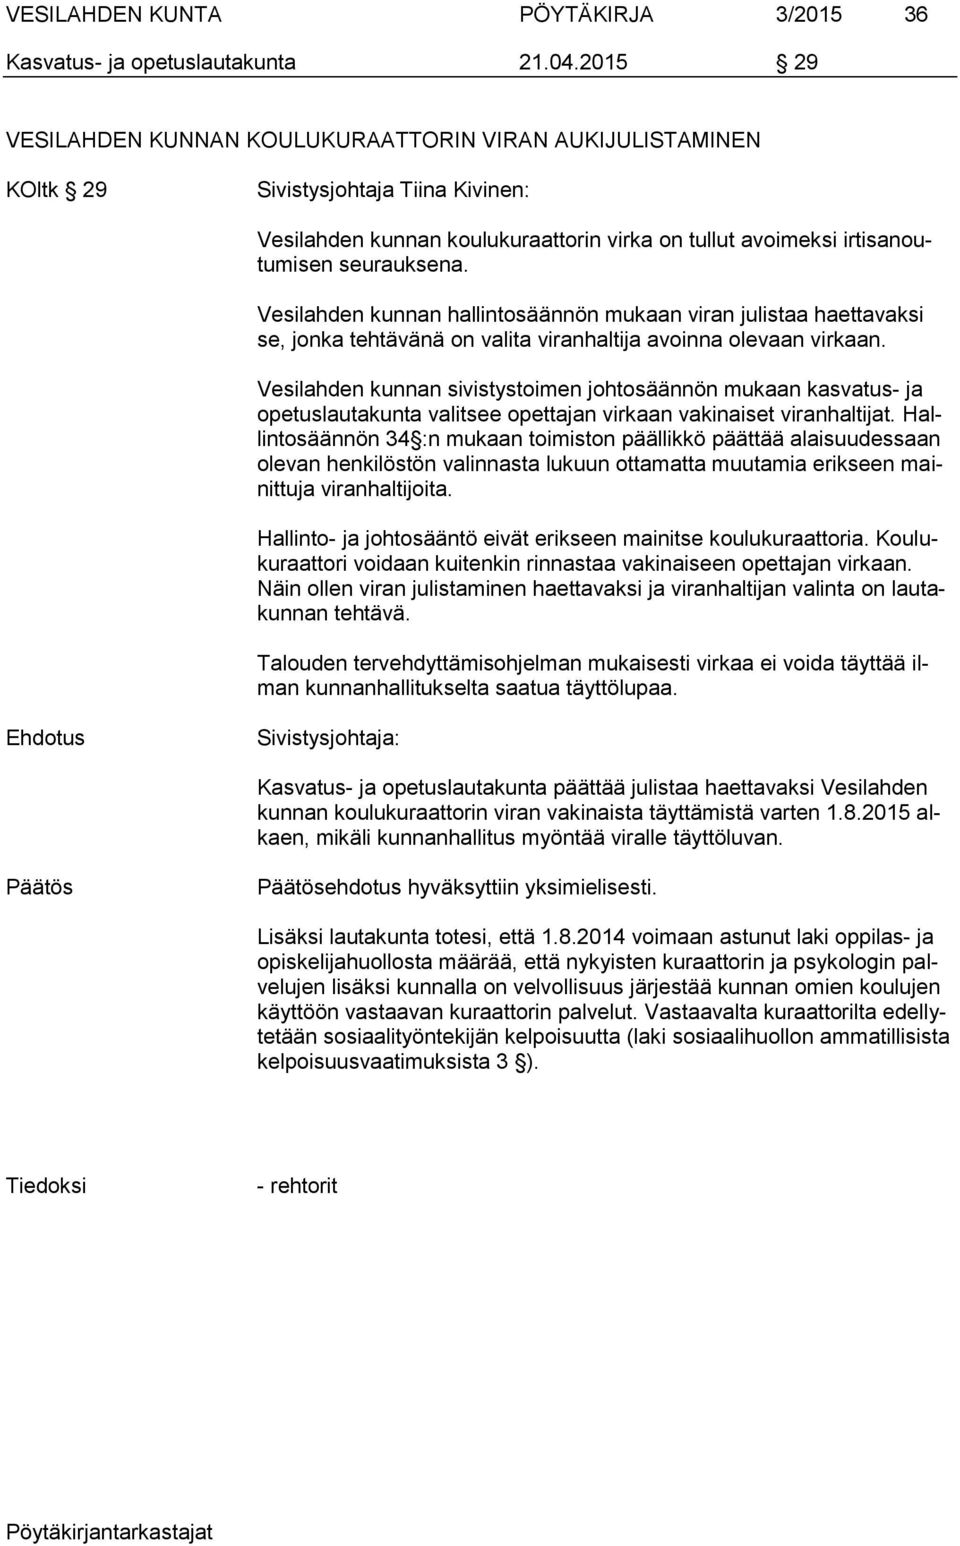 Vesilahden kunnan hallintosäännön mukaan viran julistaa haettavaksi se, jonka tehtävänä on valita viranhaltija avoinna olevaan virkaan.